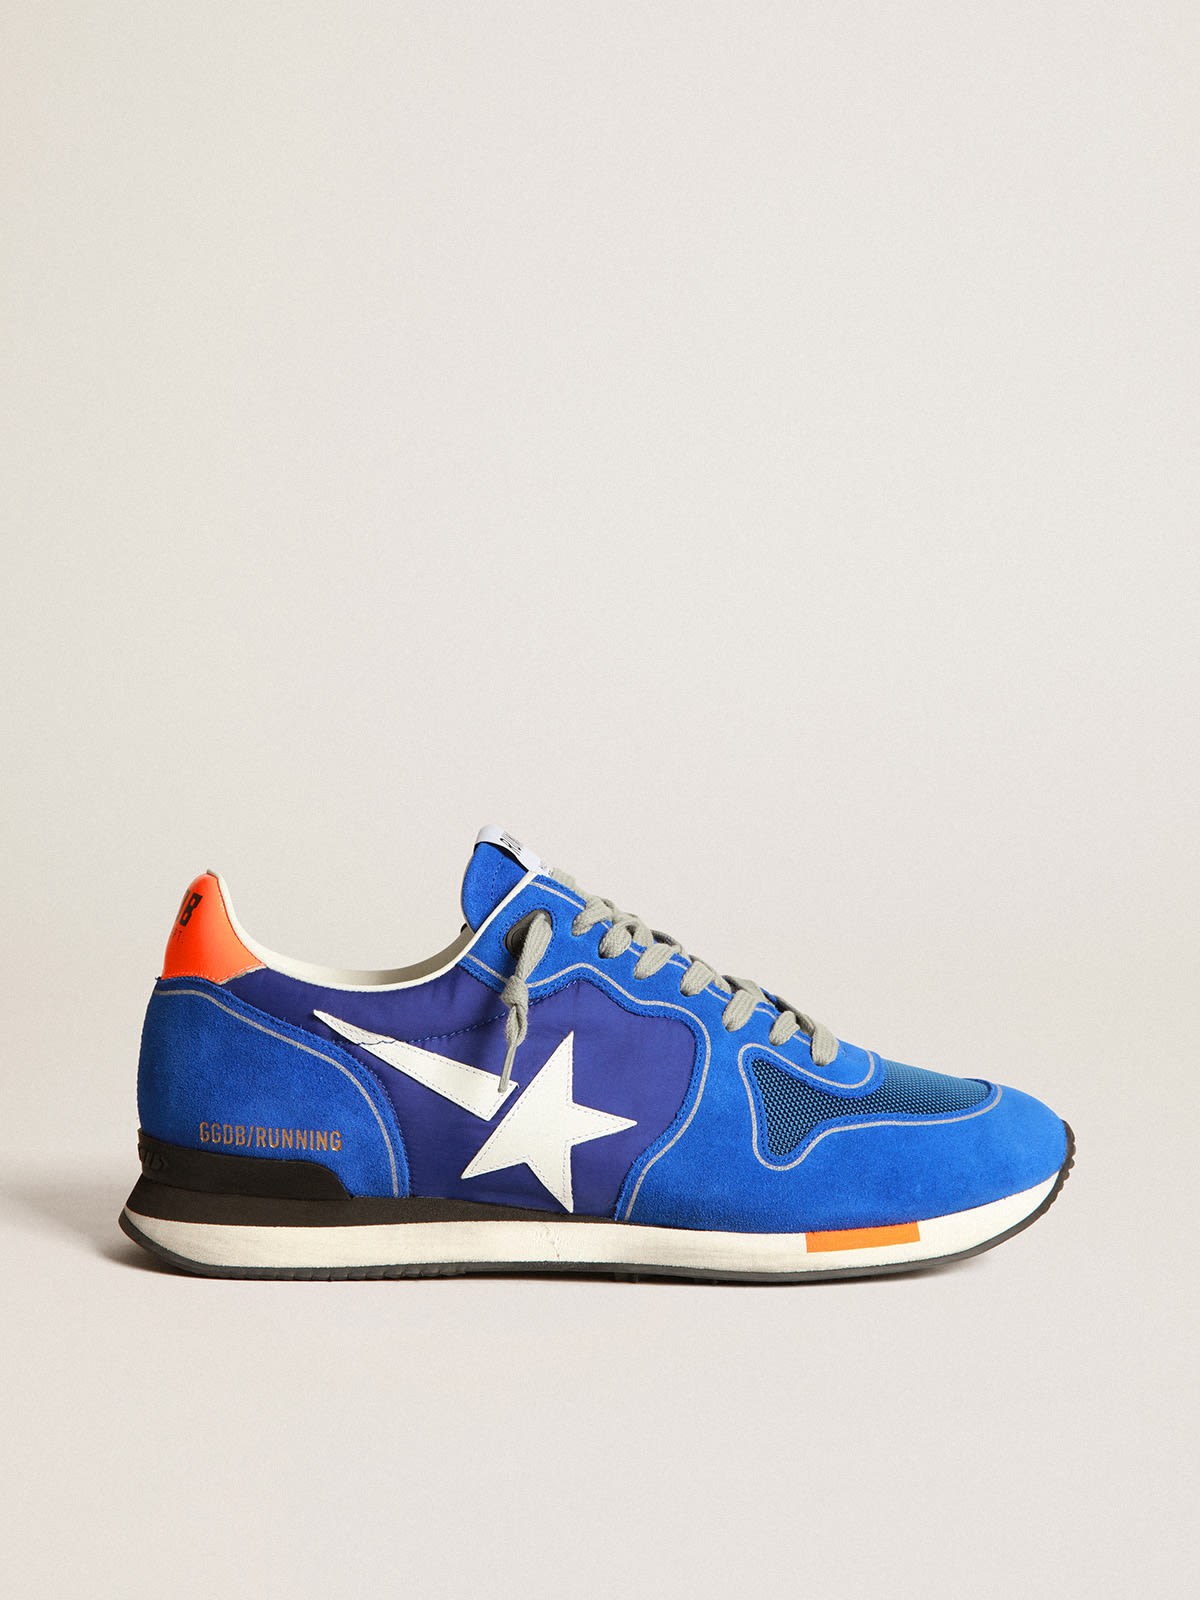 Golden Goose - Zapatillas deportivas Running en azul eléctrico con estrella blanca in 